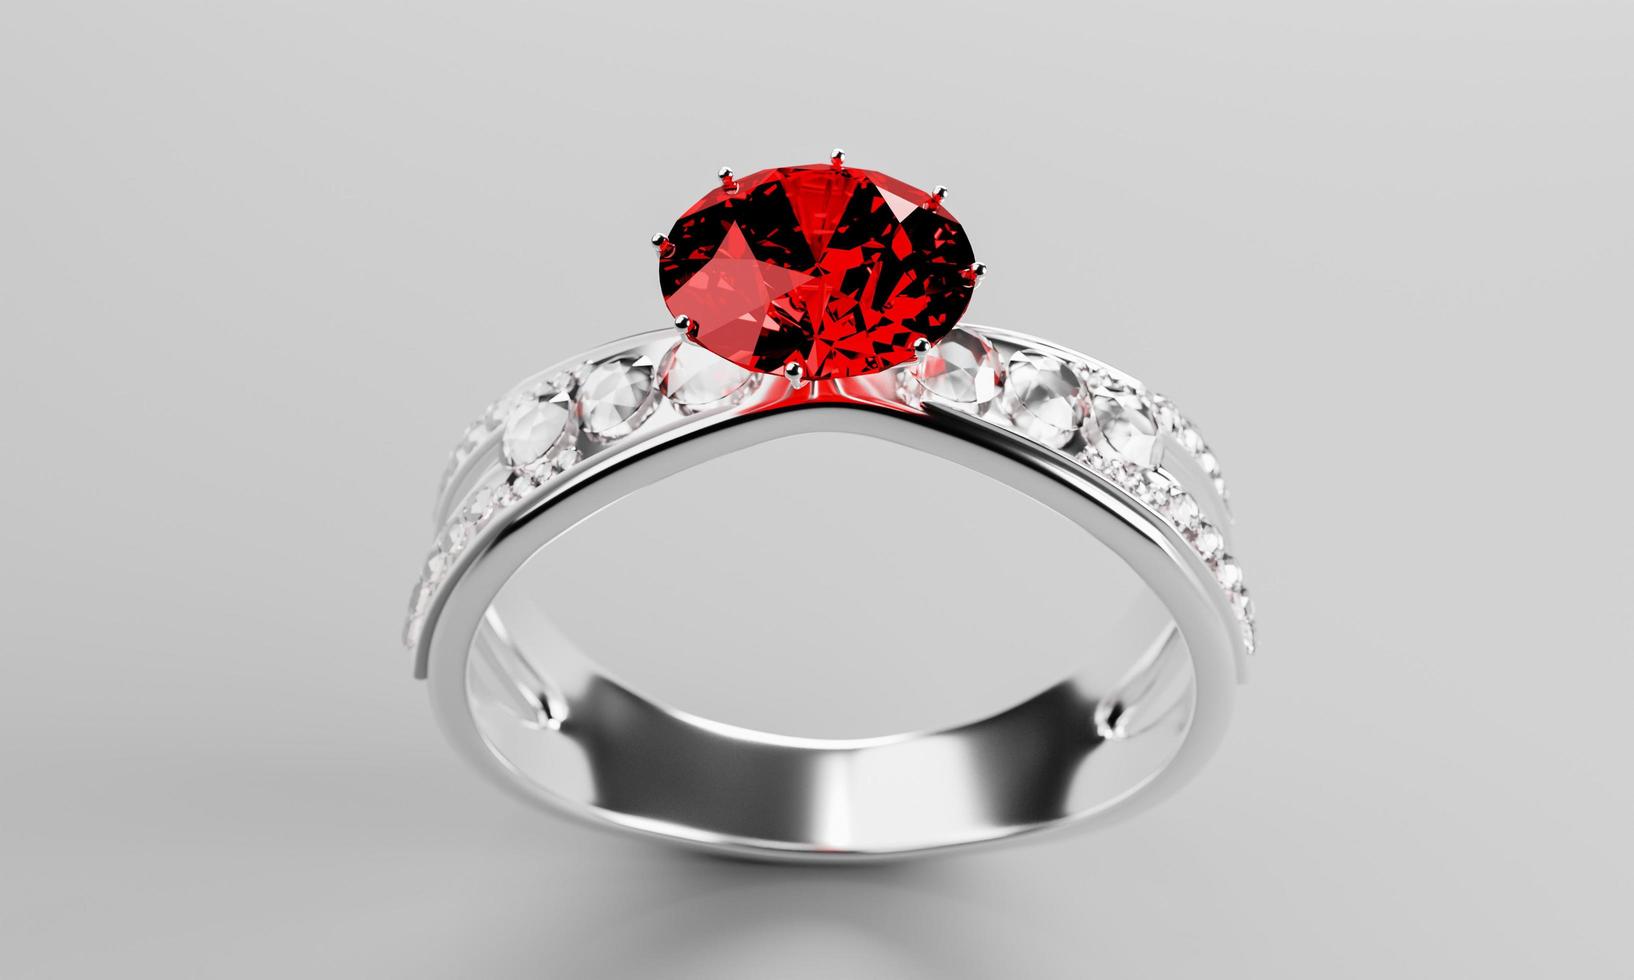 el gran diamante rojo o rubí está rodeado de muchos diamantes en el anillo de oro platino colocado sobre un fondo gris. Elegante anillo de bodas con diamantes para mujer. representación 3d foto